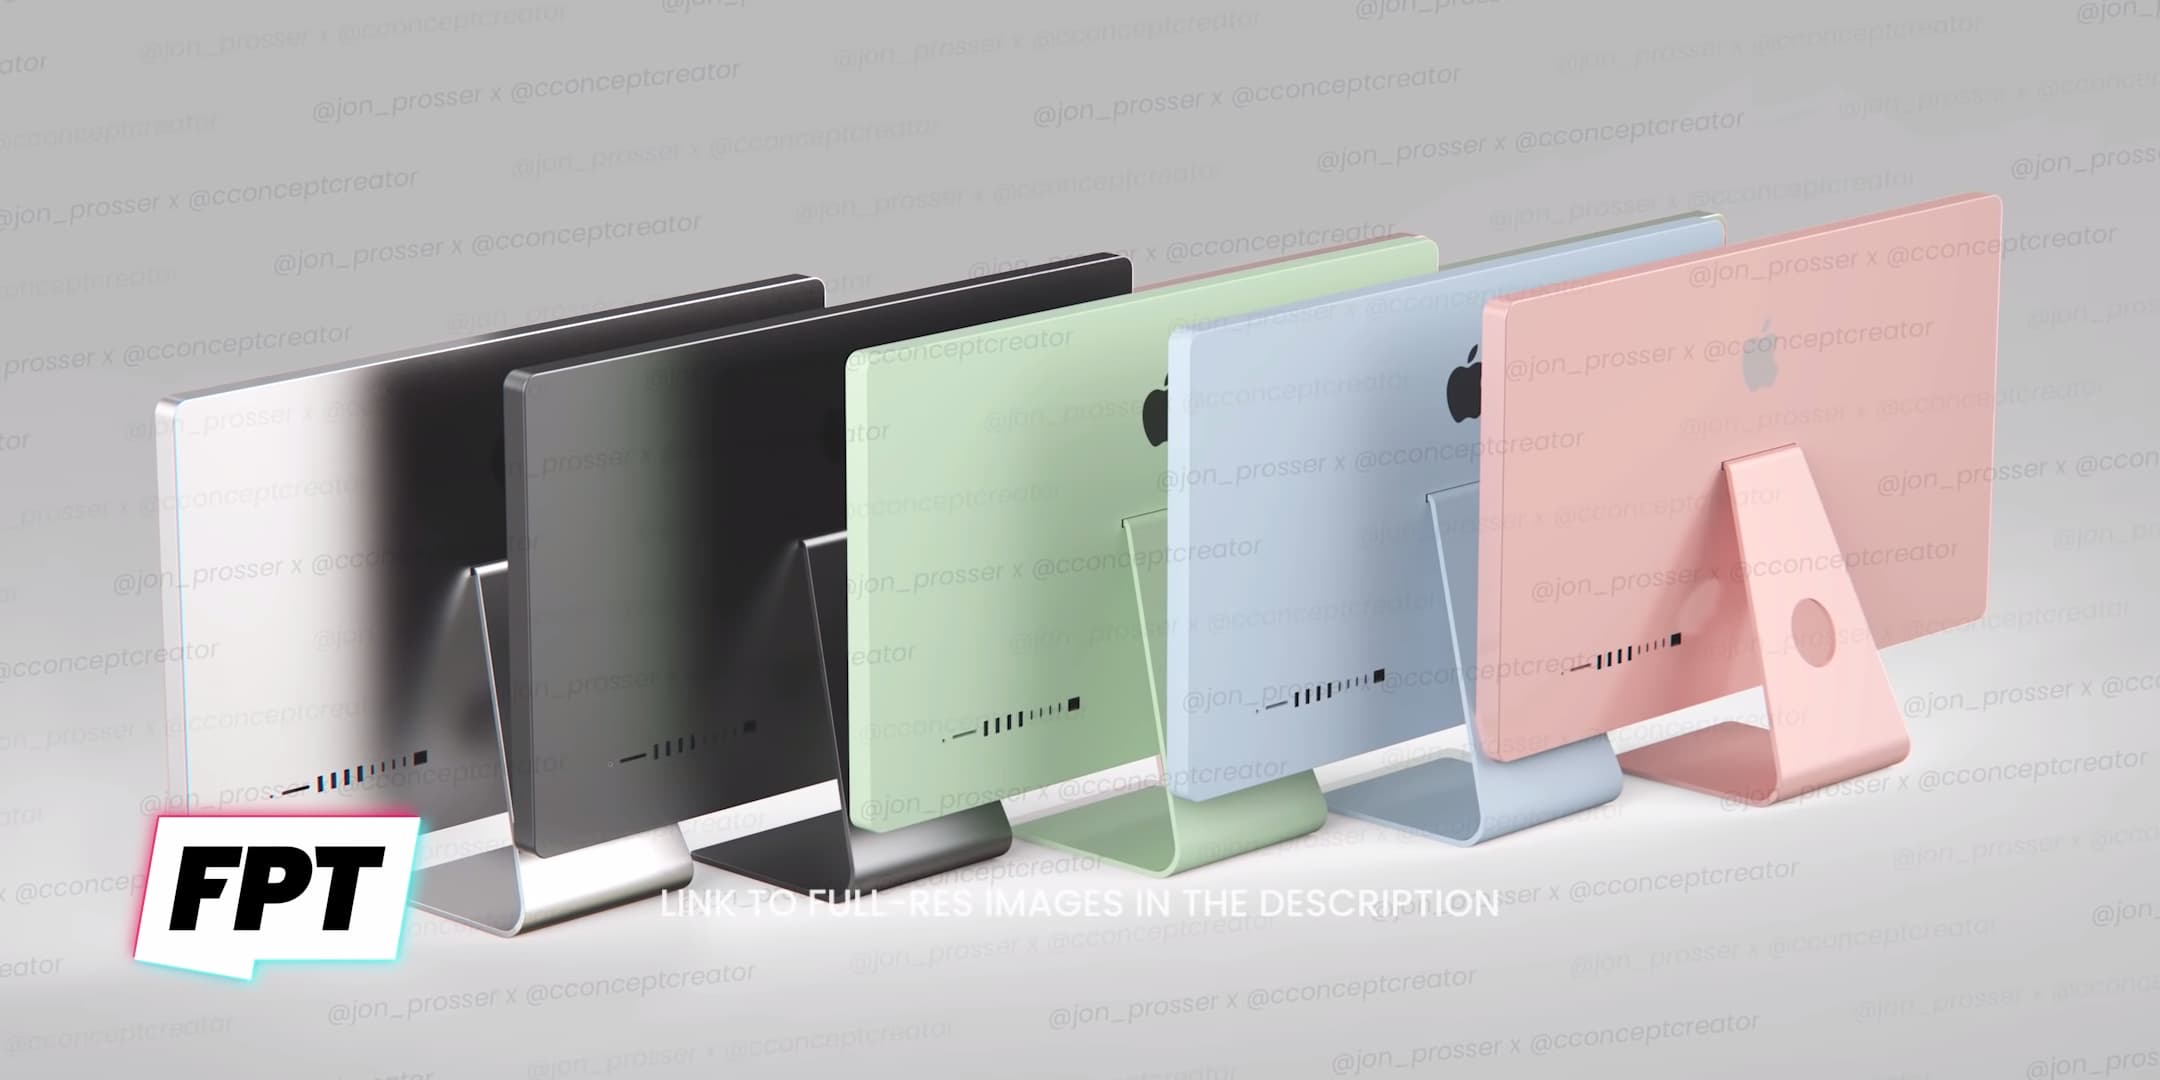 蘋果 2021 iMac 外觀首度曝光，有5種顏色類似 iPad Air